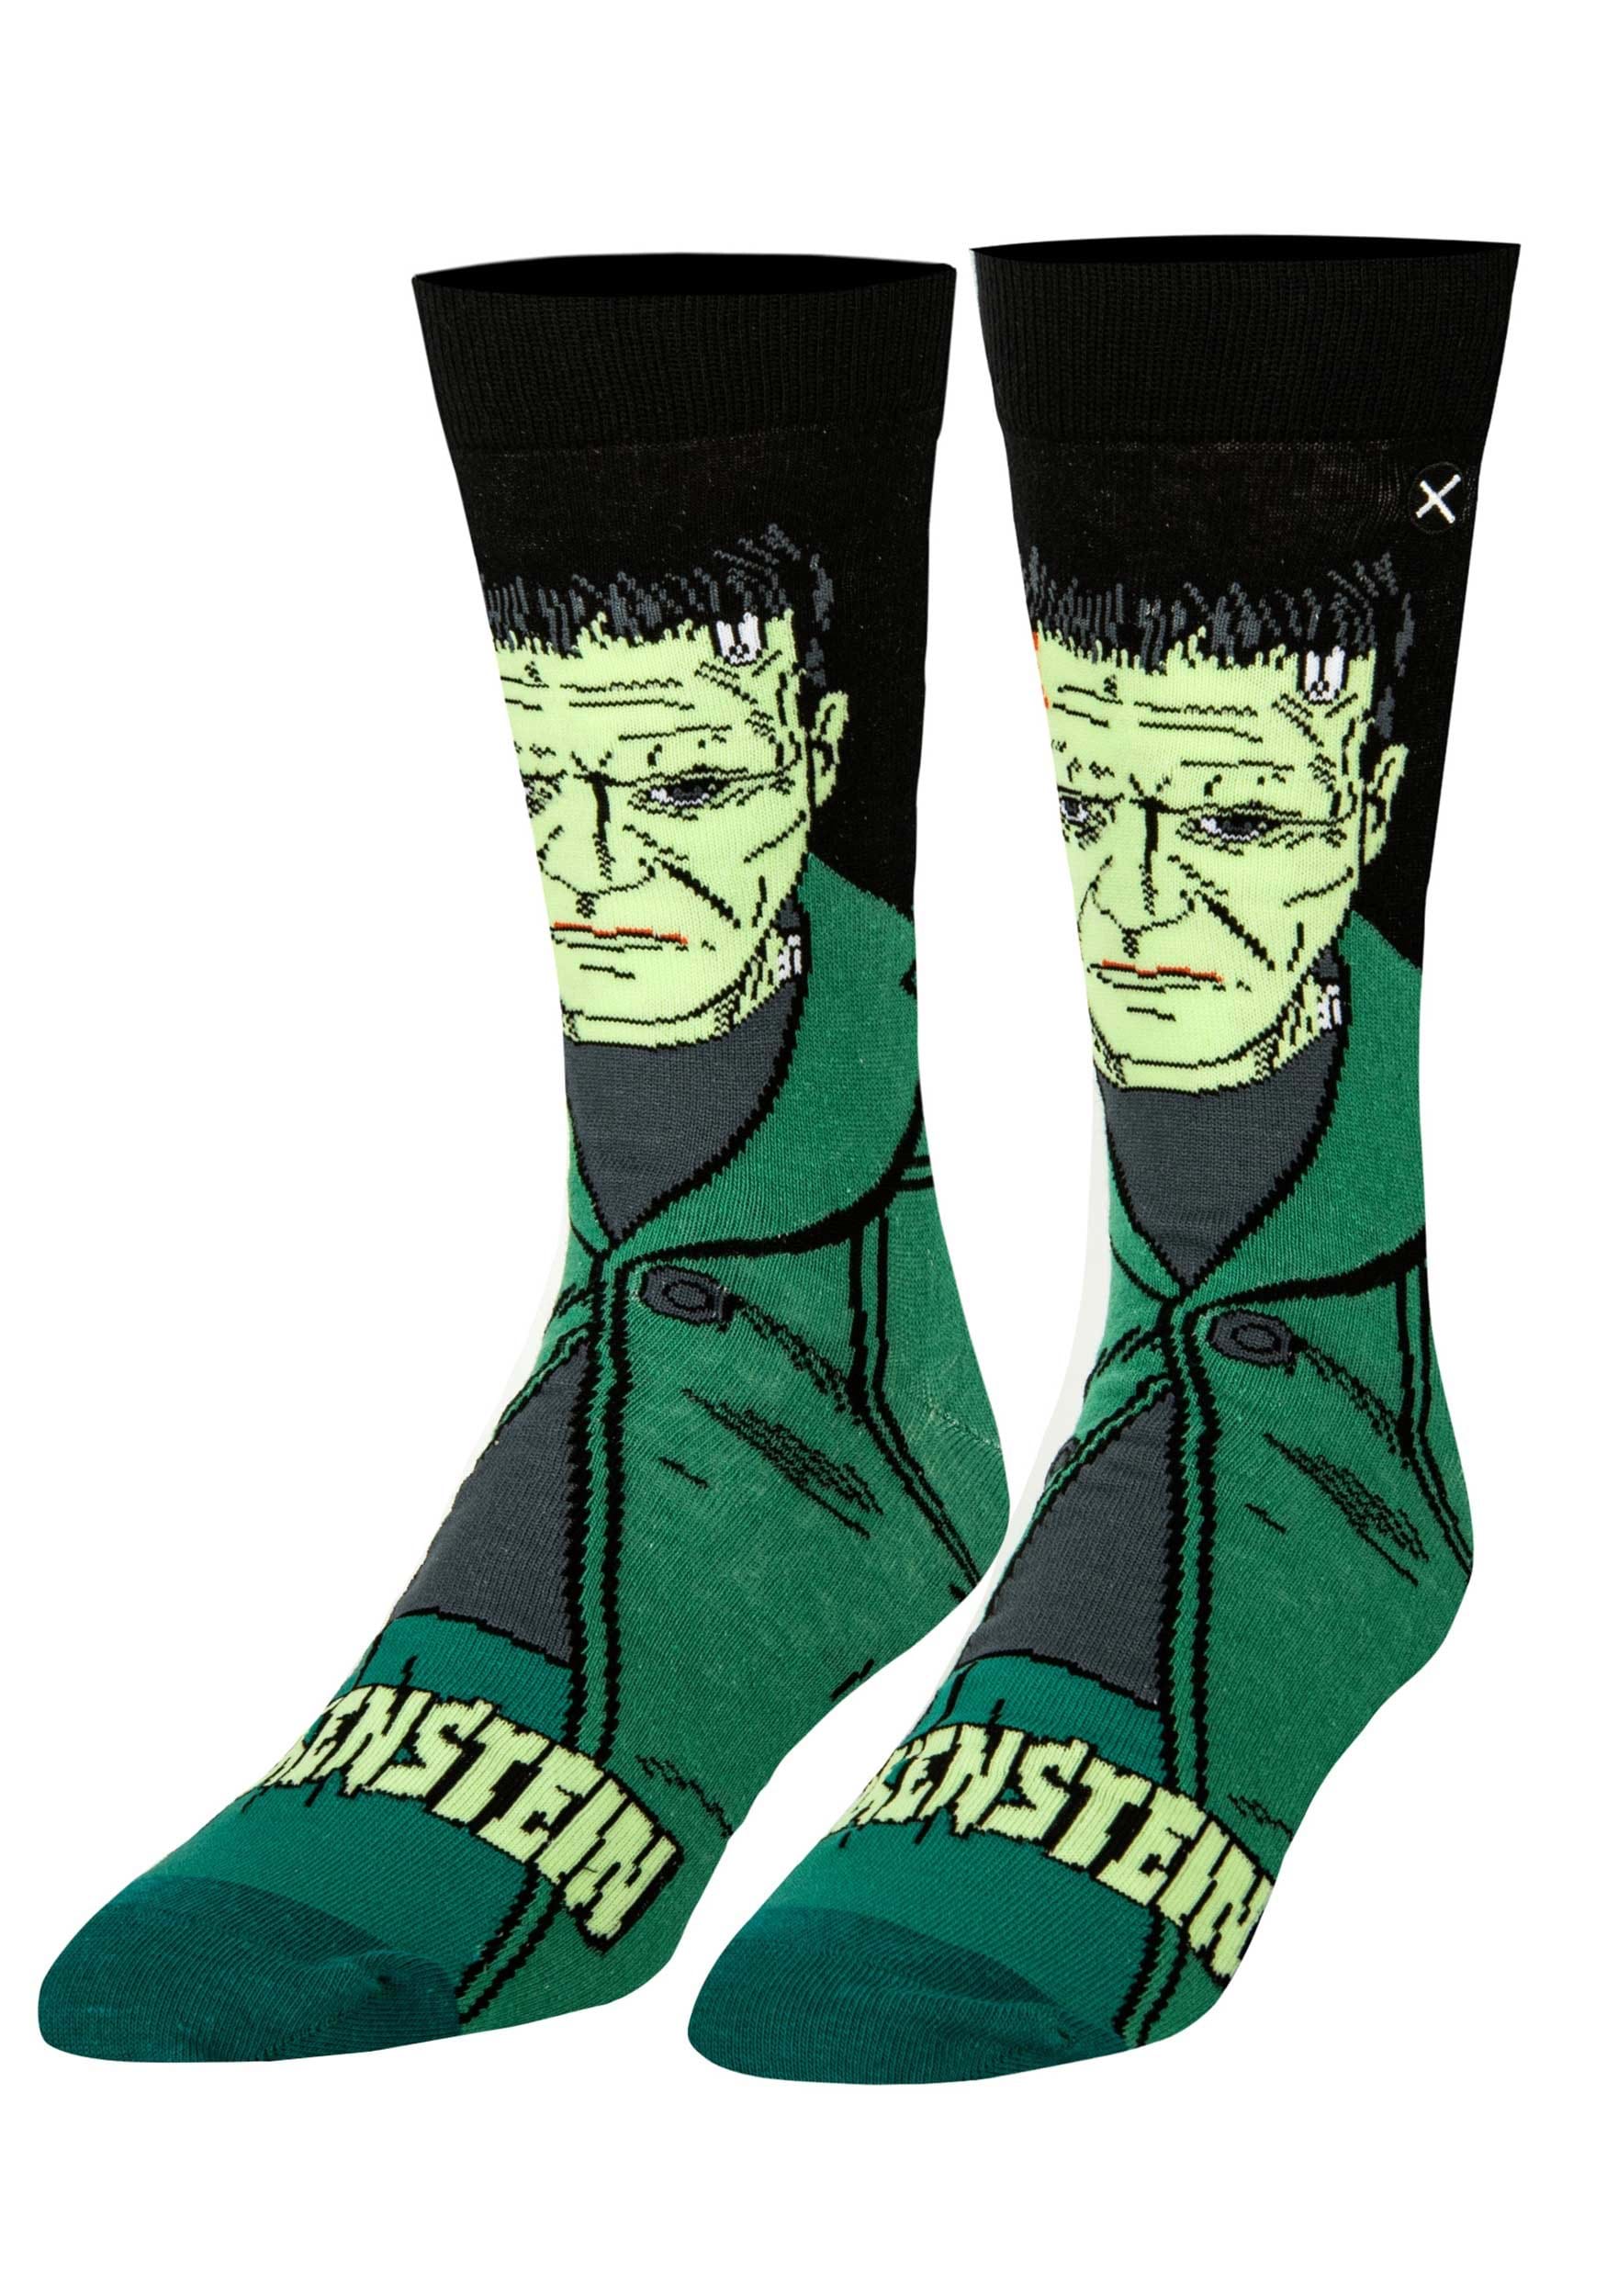 Frankenstein Crew Straight Socks For Adults